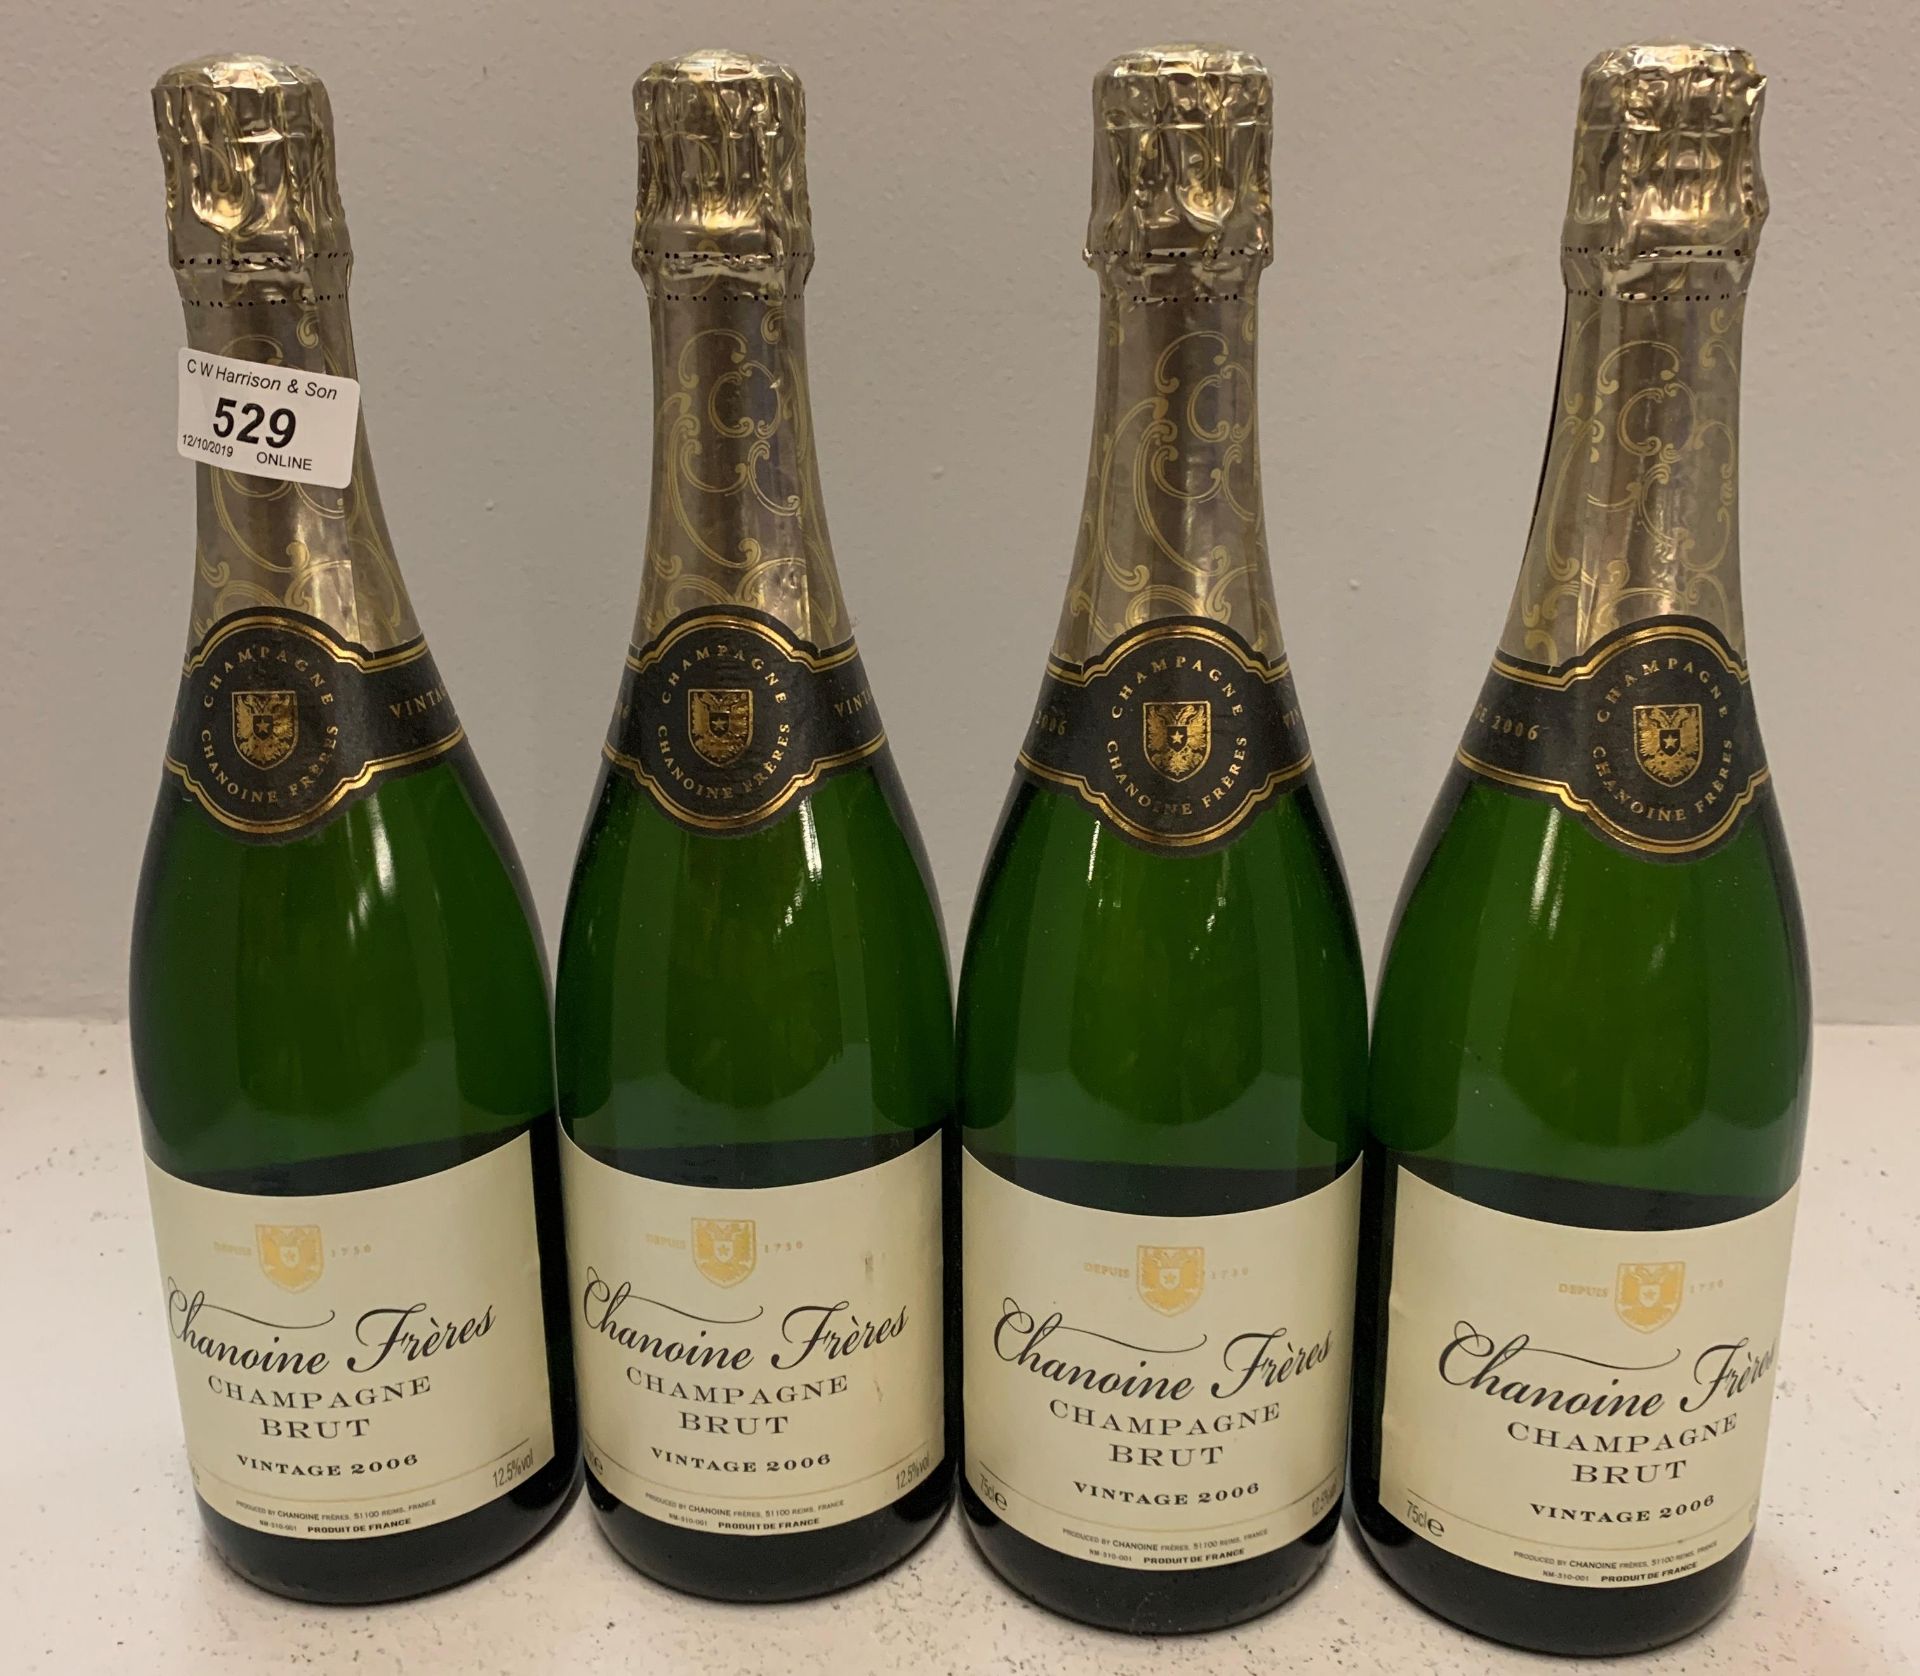 4 x 750ml bottles Chanoine Freres Vintage 2006 champagne